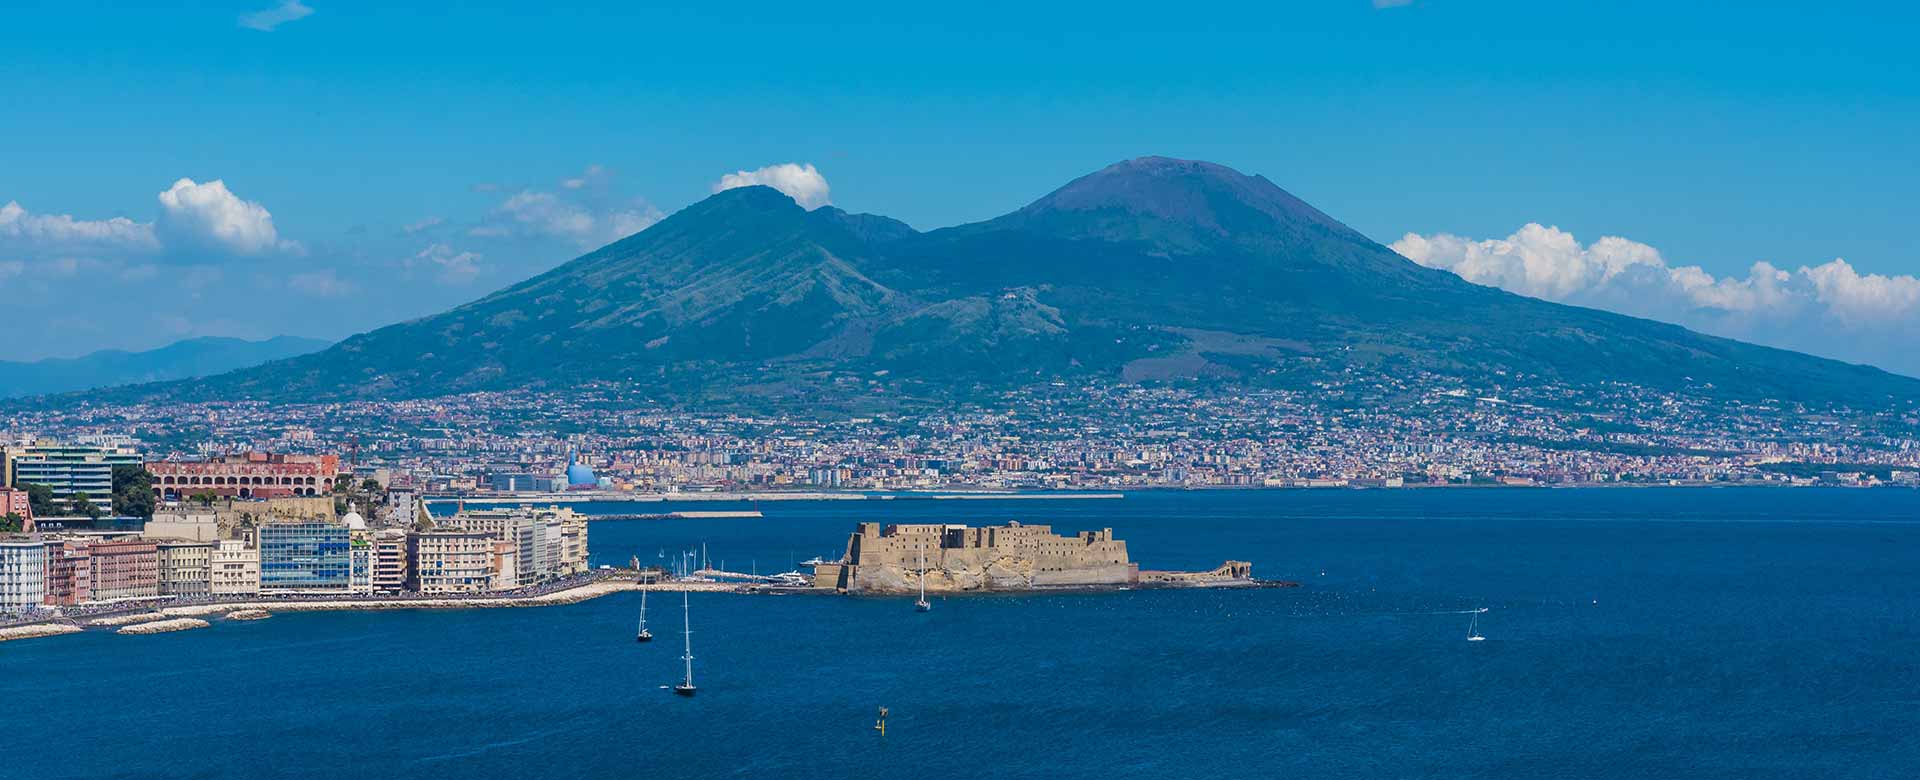 Immagine del Vesuvio, golfo di Napoli